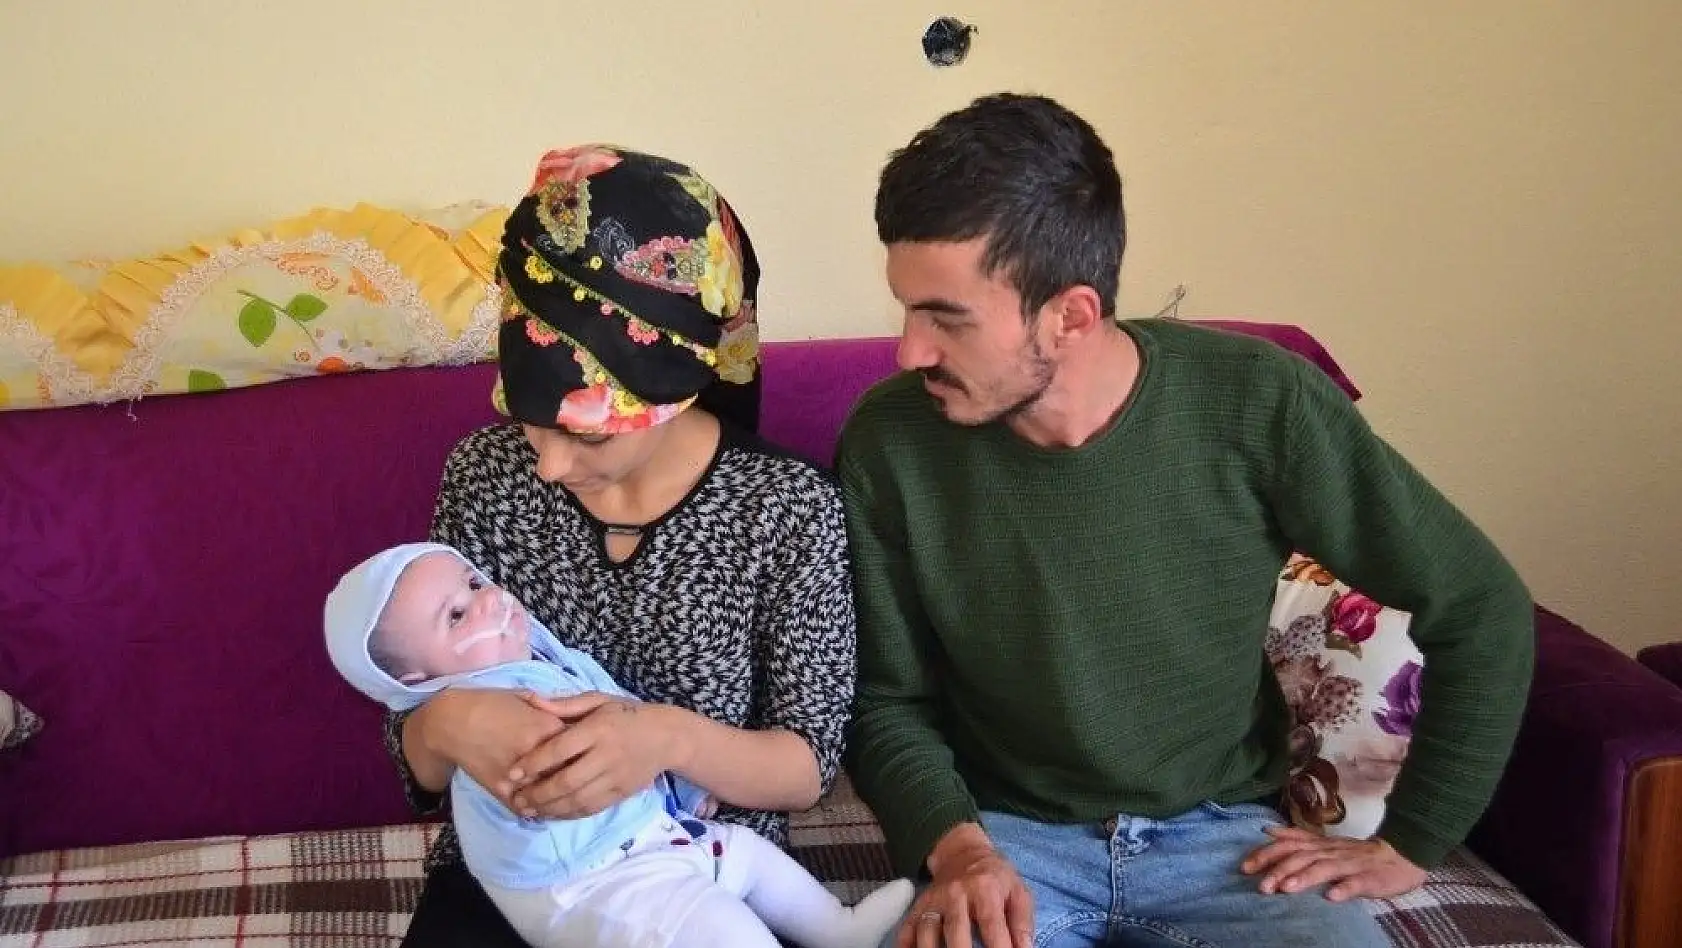 Şizensefali hastası bebeğin ailesi yardım bekliyor
